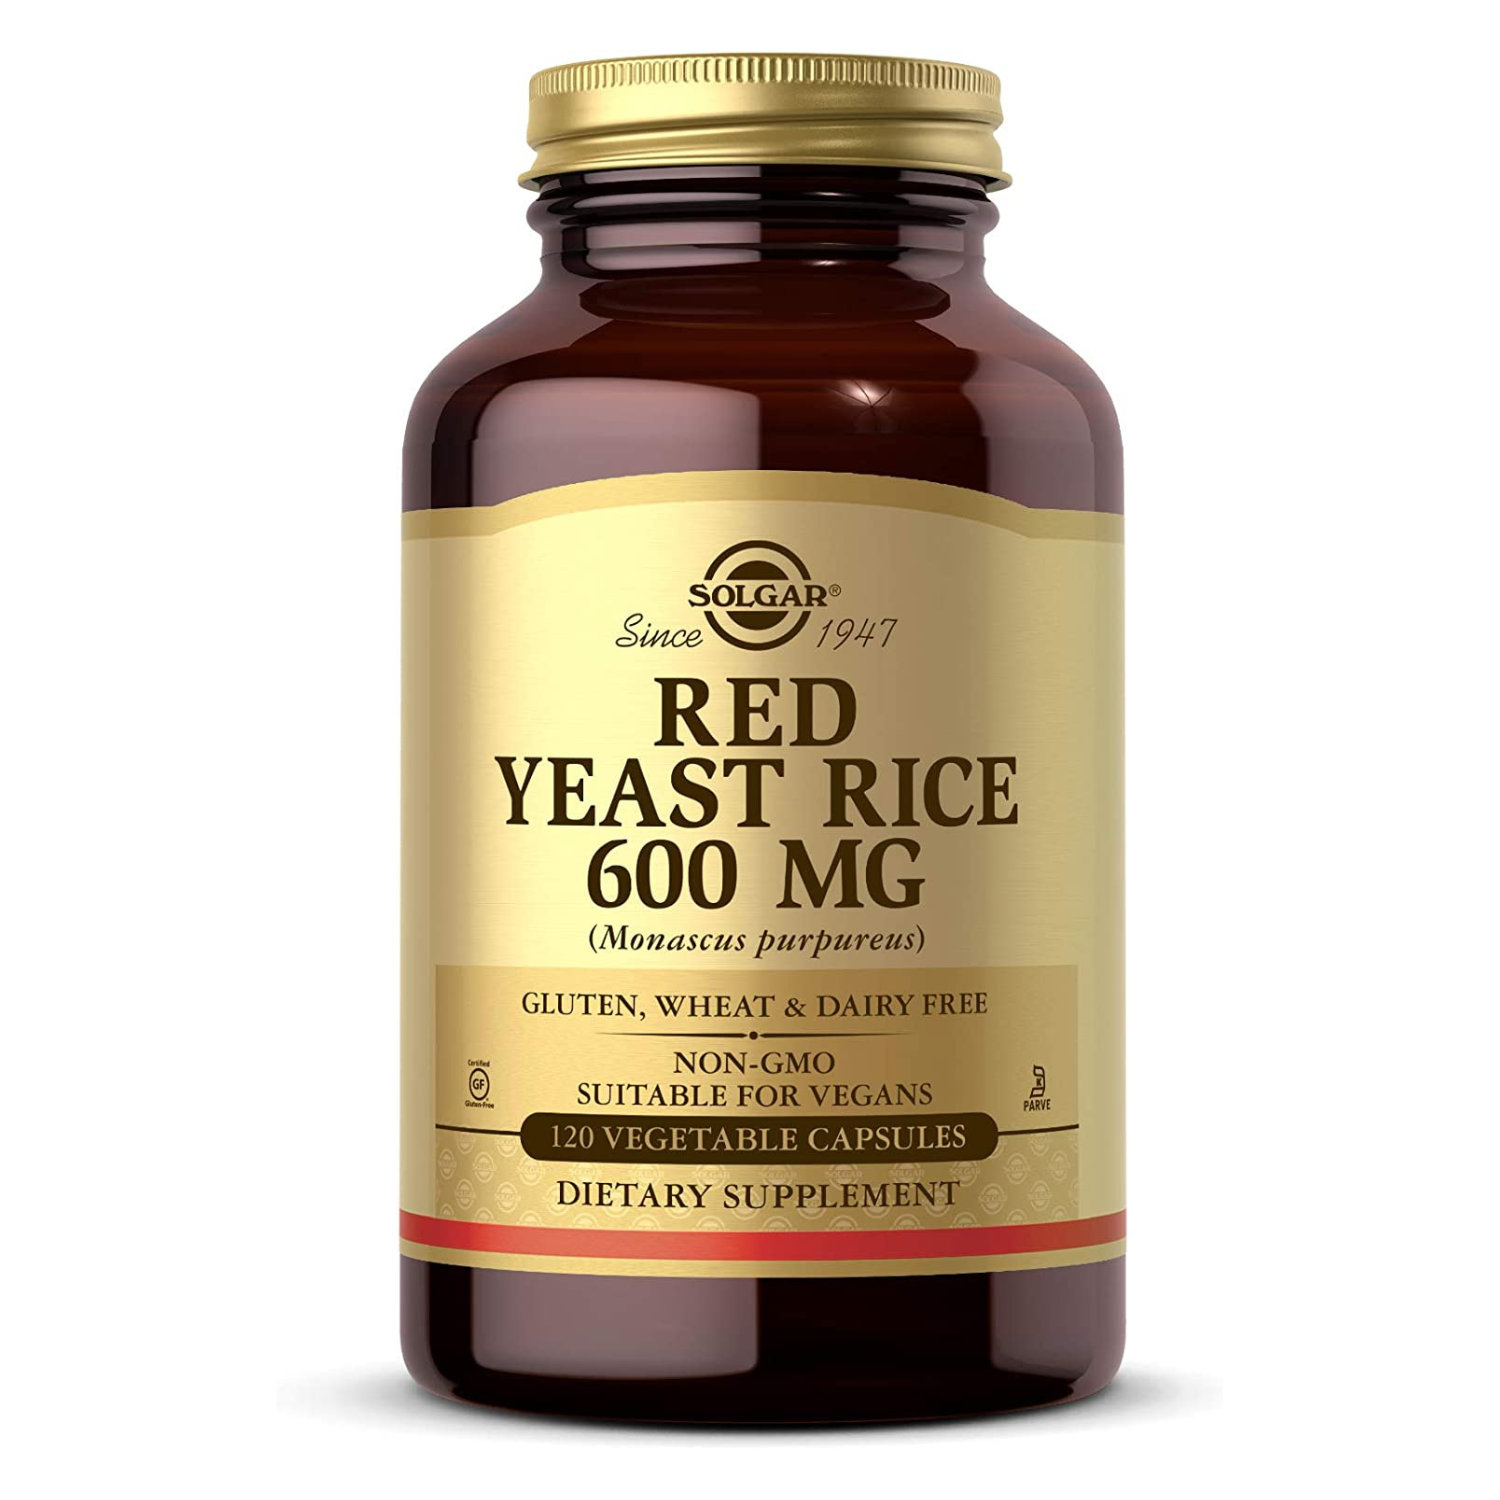 Solgar - Red Yeast Rice, 600 mg - 120 Veg Capsules